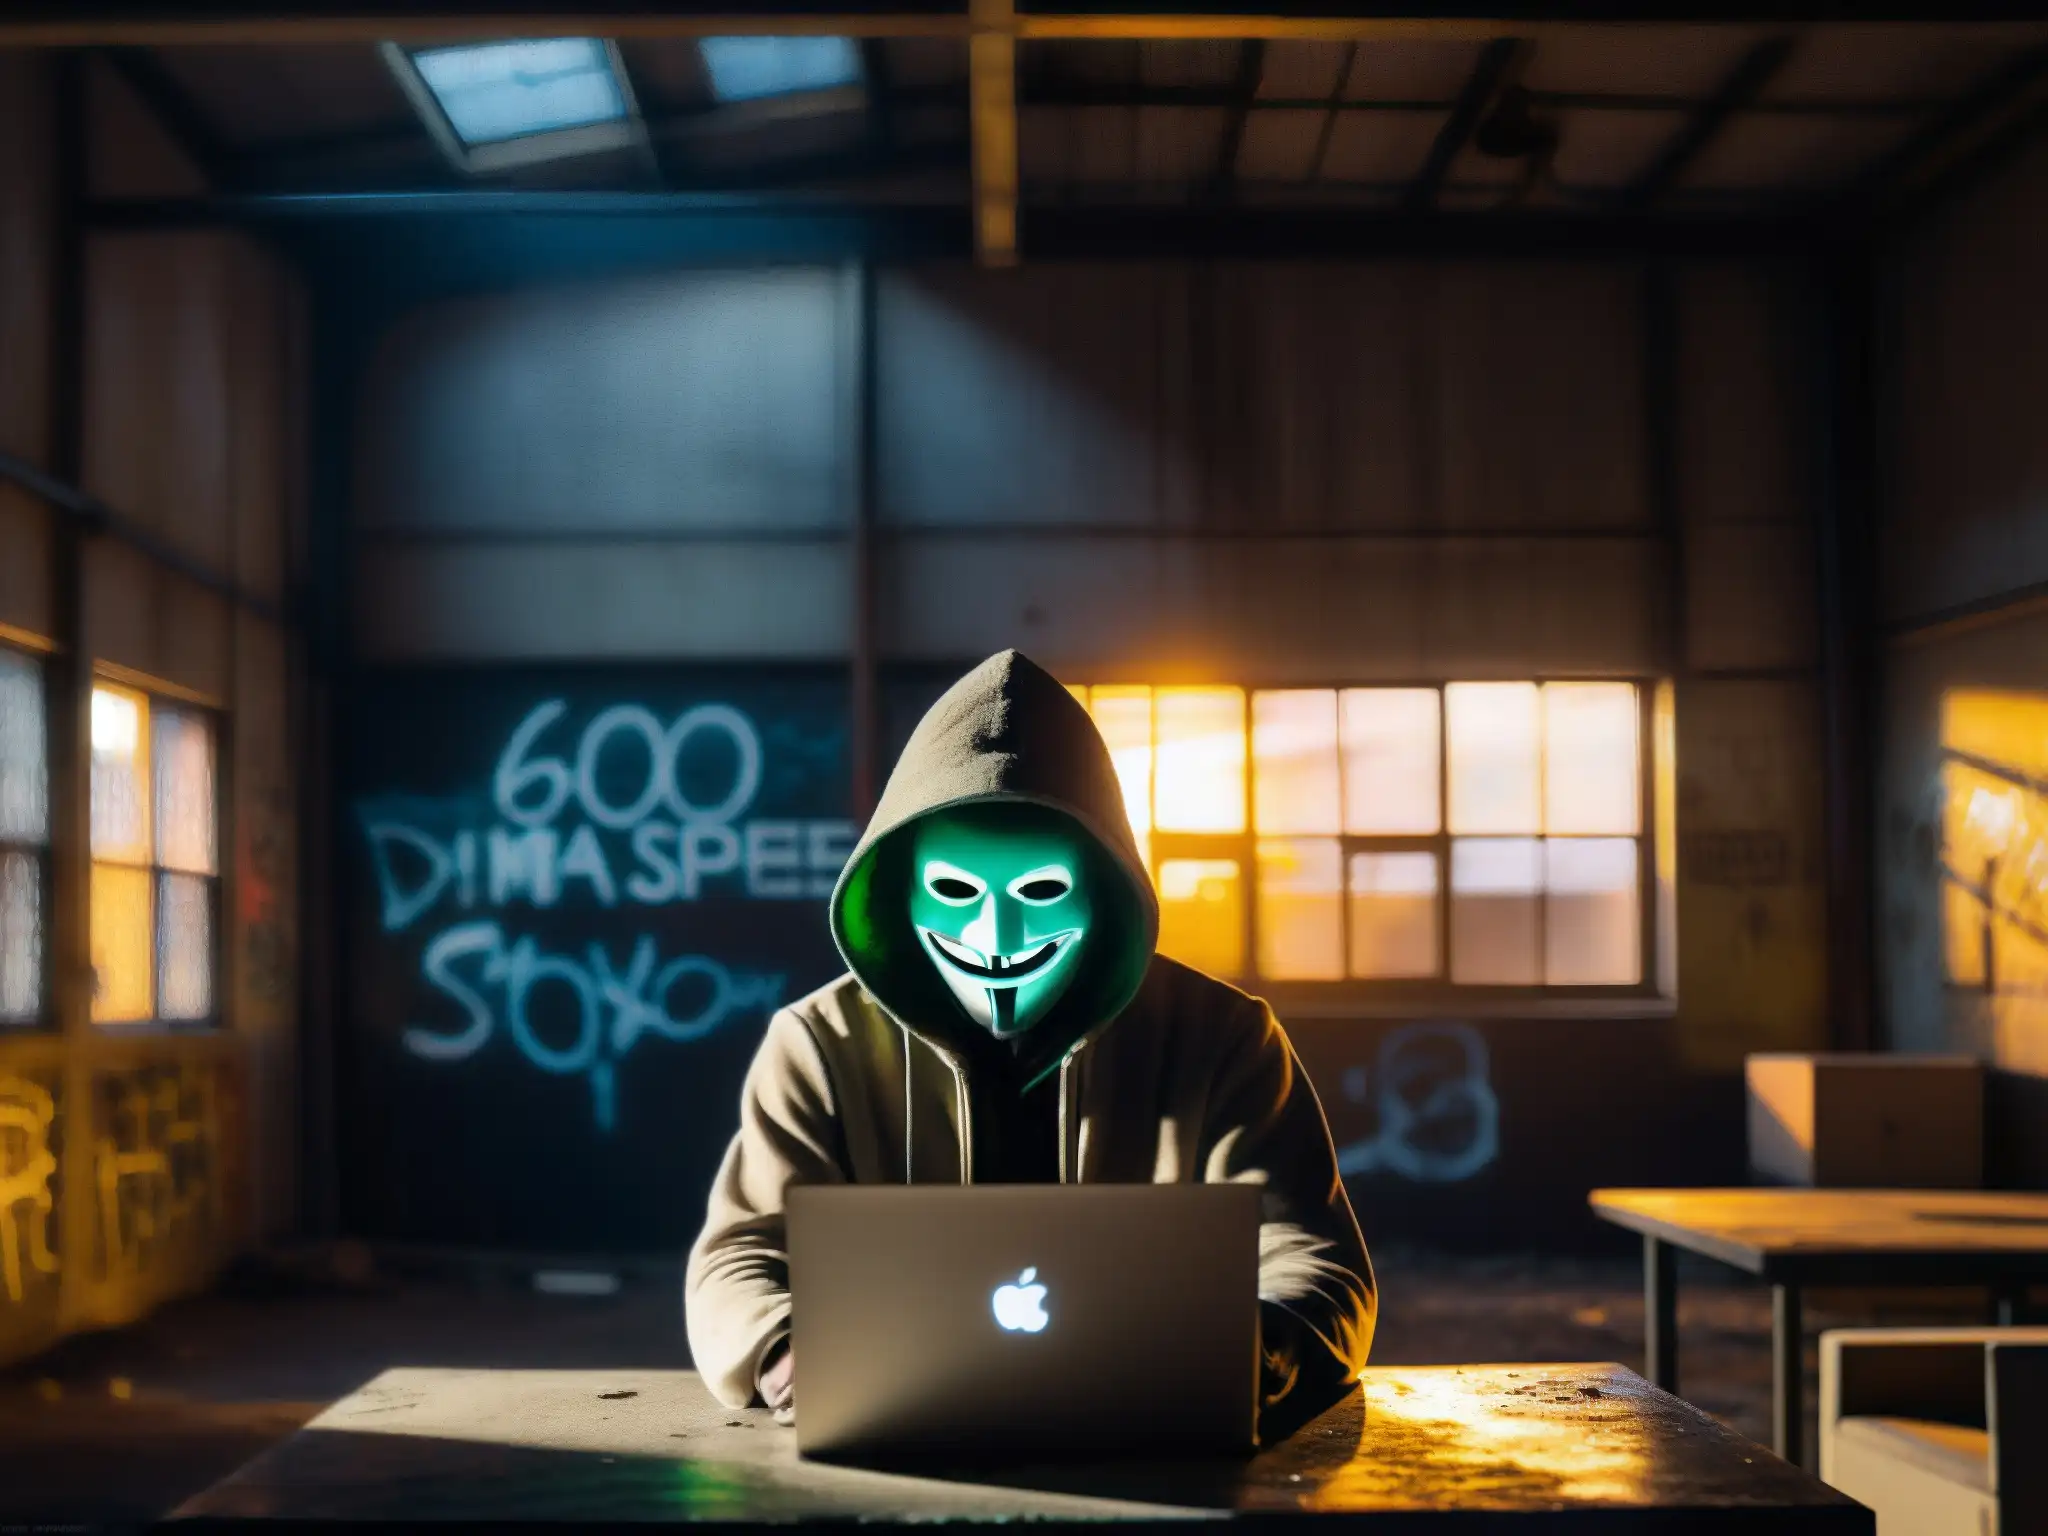 Un misterioso hacker en una fábrica abandonada, con grafitis y ventanas rotas, crea una atmósfera urbana fantasmagórica